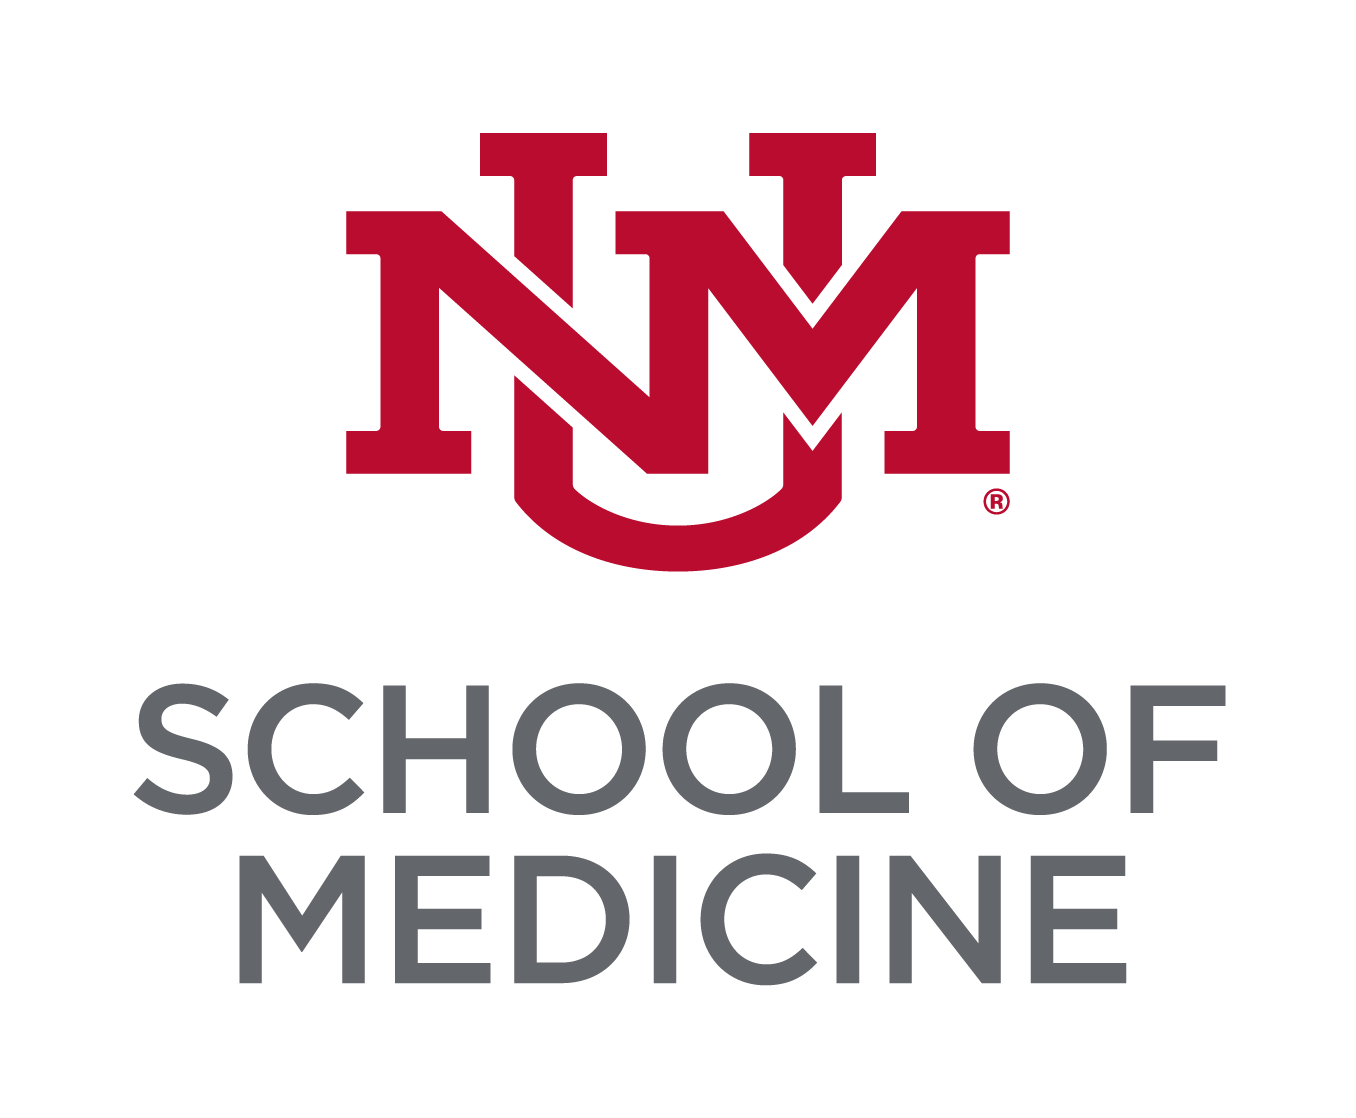 Монограмма университетского блока UNM вишнево-красного цвета, расположенная над надписью Lobo Grey «Школа медицины».